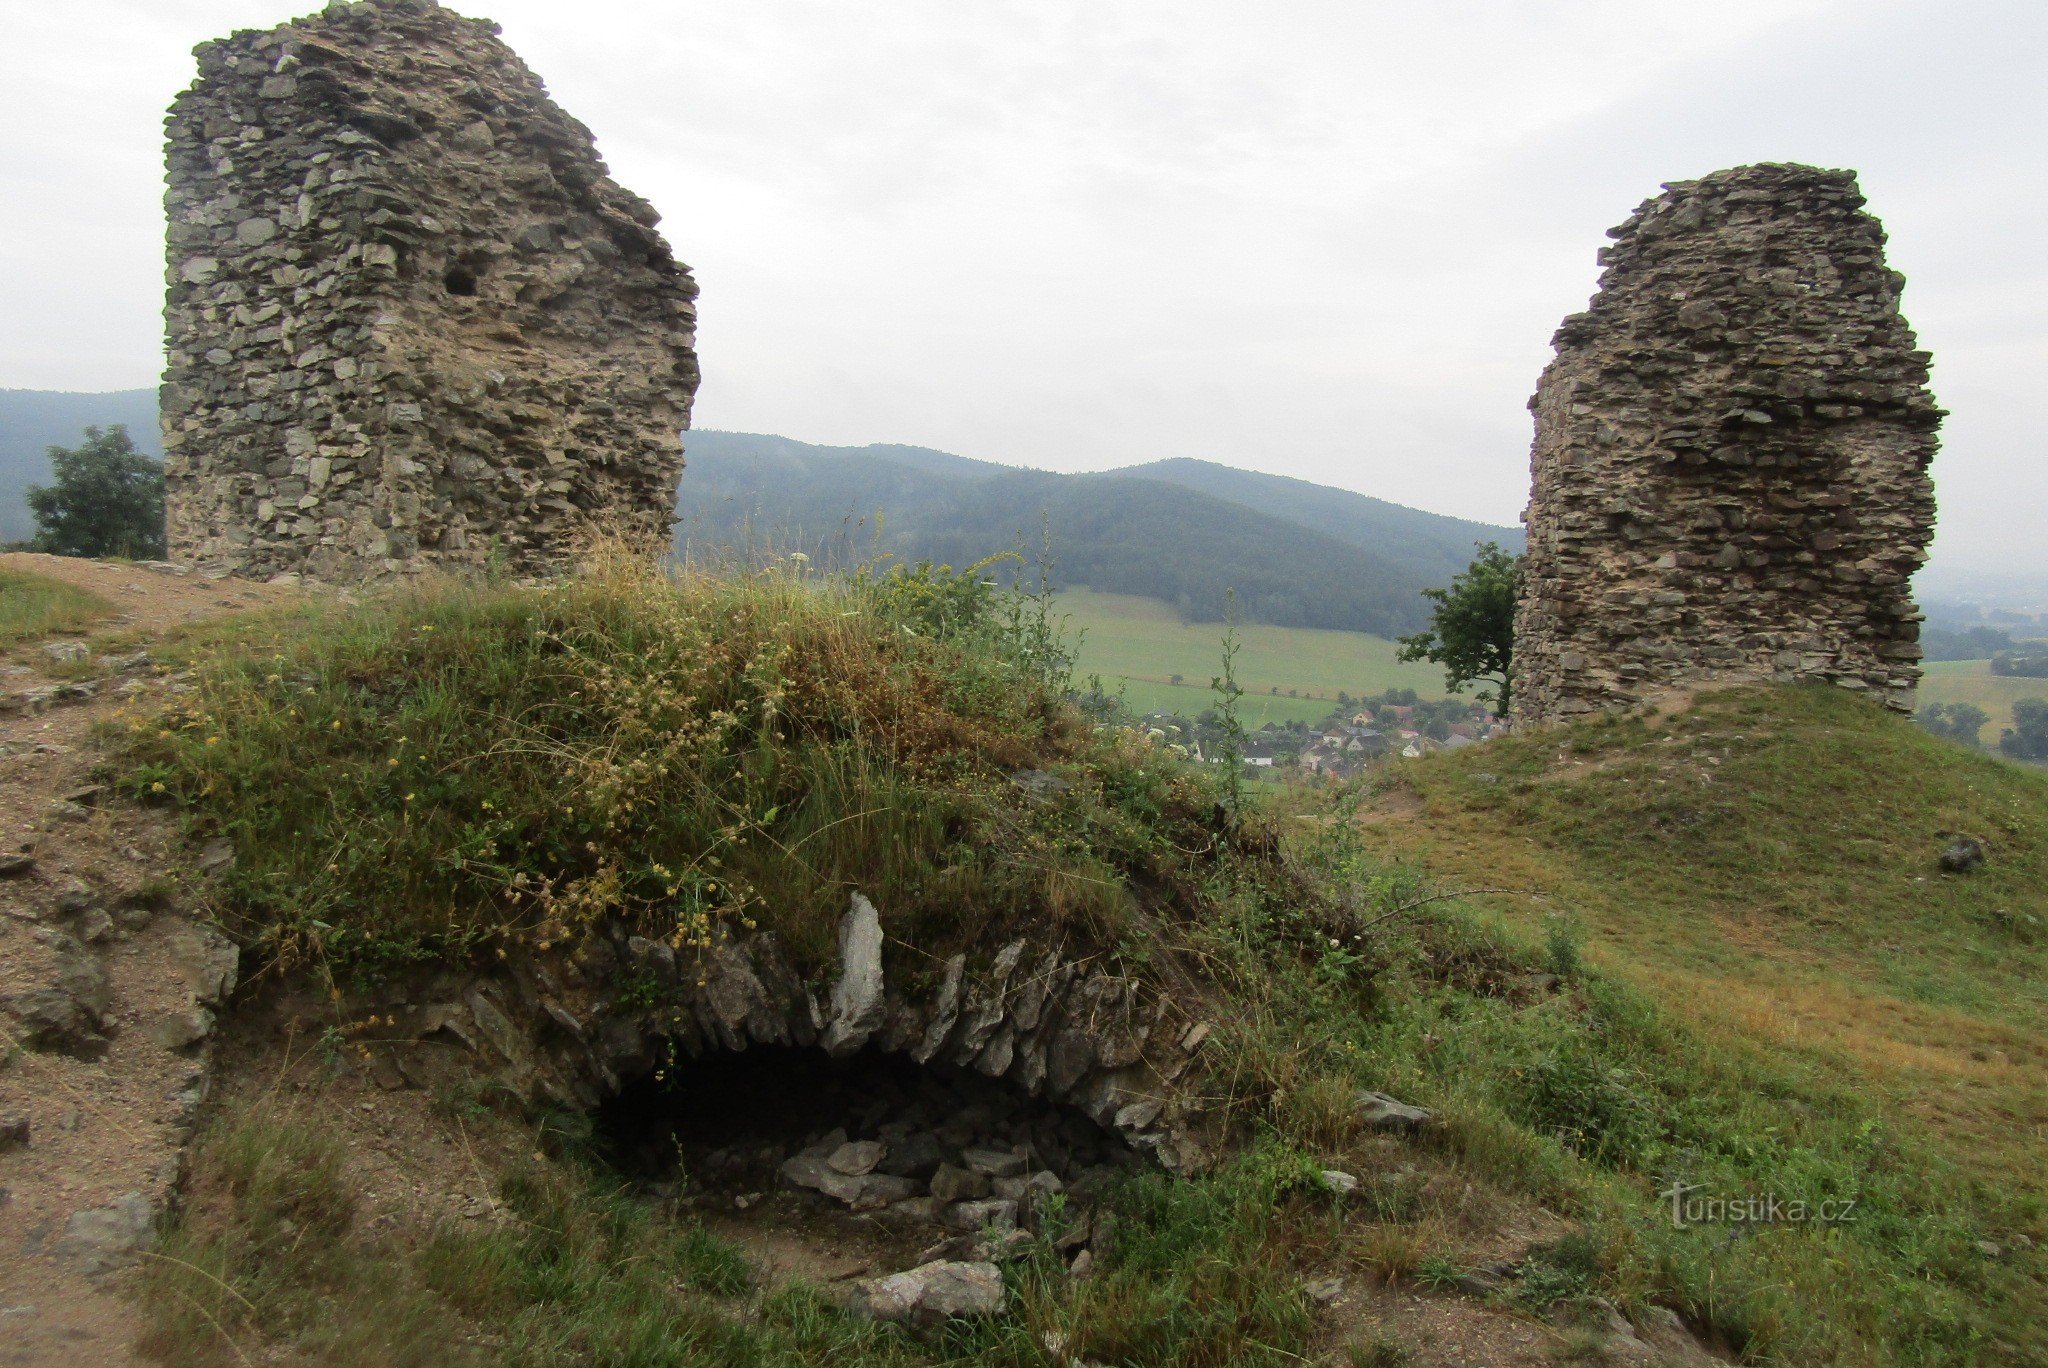 Ruinerna av Brníčko slott